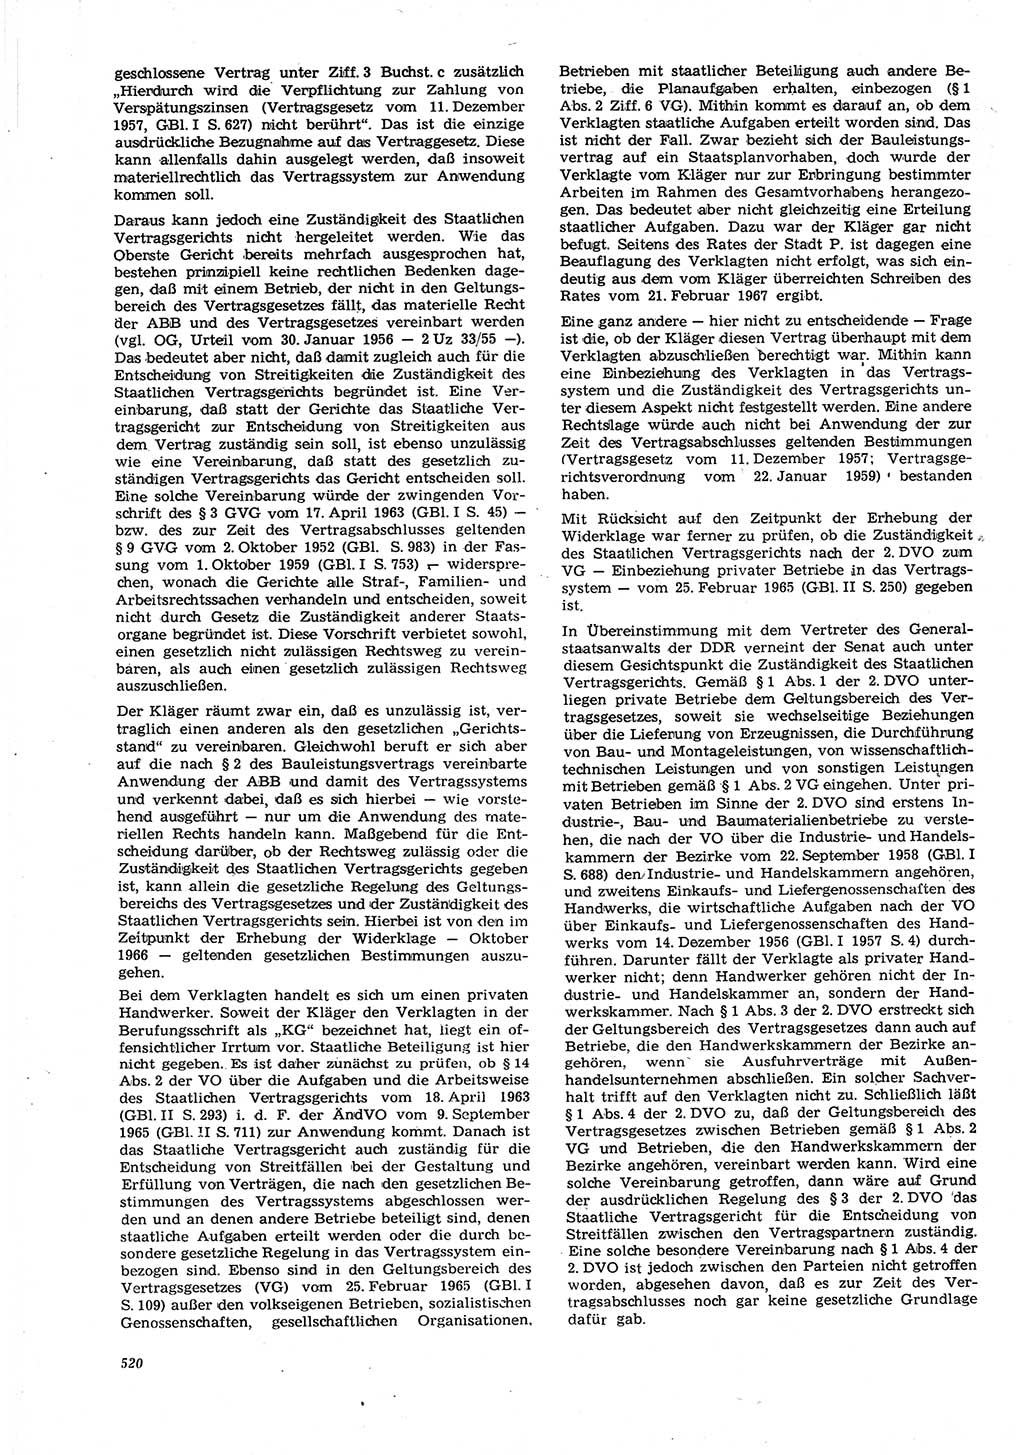 Neue Justiz (NJ), Zeitschrift für Recht und Rechtswissenschaft [Deutsche Demokratische Republik (DDR)], 21. Jahrgang 1967, Seite 520 (NJ DDR 1967, S. 520)